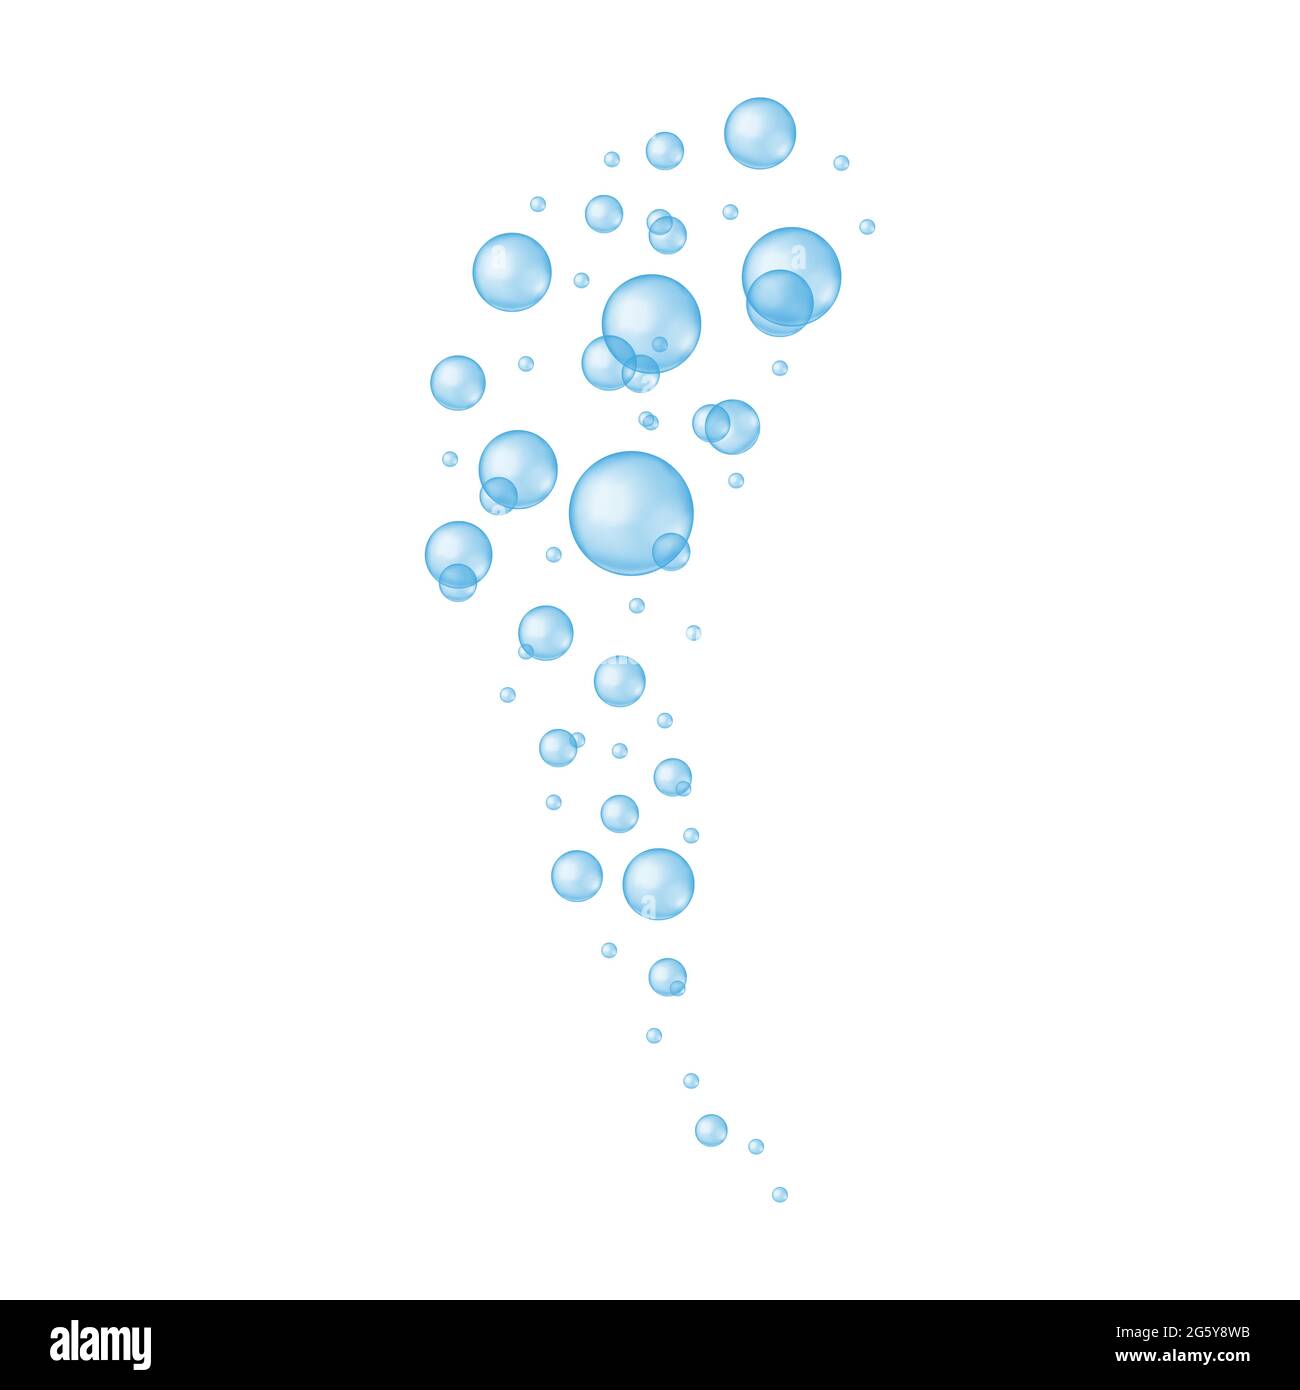 Transparente blaue Blasen isoliert auf weißem Hintergrund. Seife oder Reinigungsmittel Schaum, Aquarium oder Meer Sauerstoffstrom, Bad sud, kohlensäurehaltige Wasser Wirkung. Vektor-realistische Darstellung. Stock Vektor